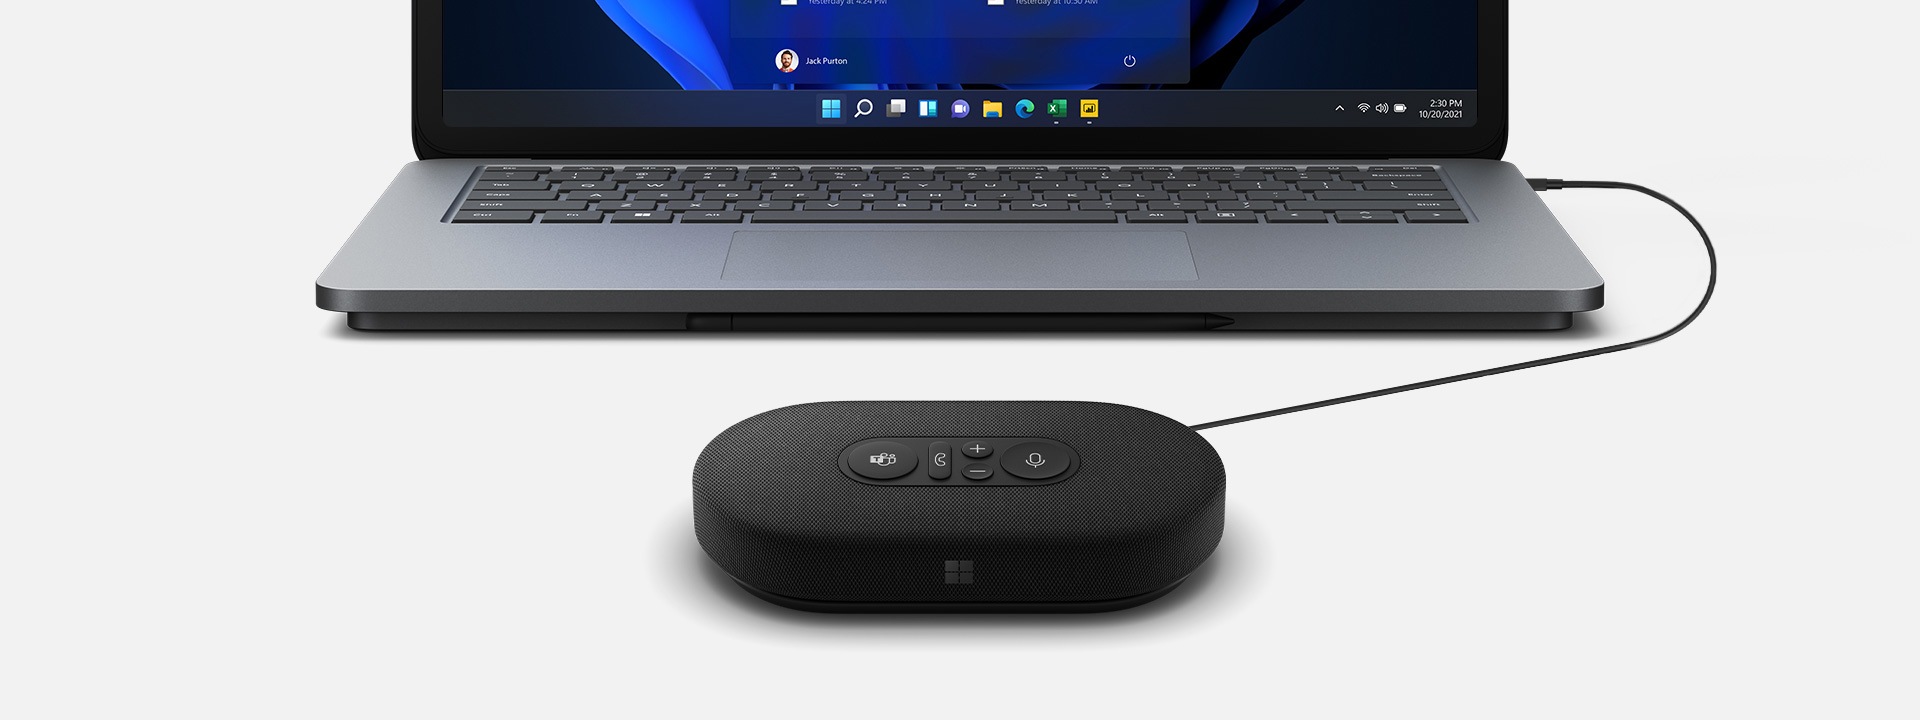 Immagine di un Altoparlante USB-C moderno Microsoft collegato a un dispositivo Surface sullo sfondo